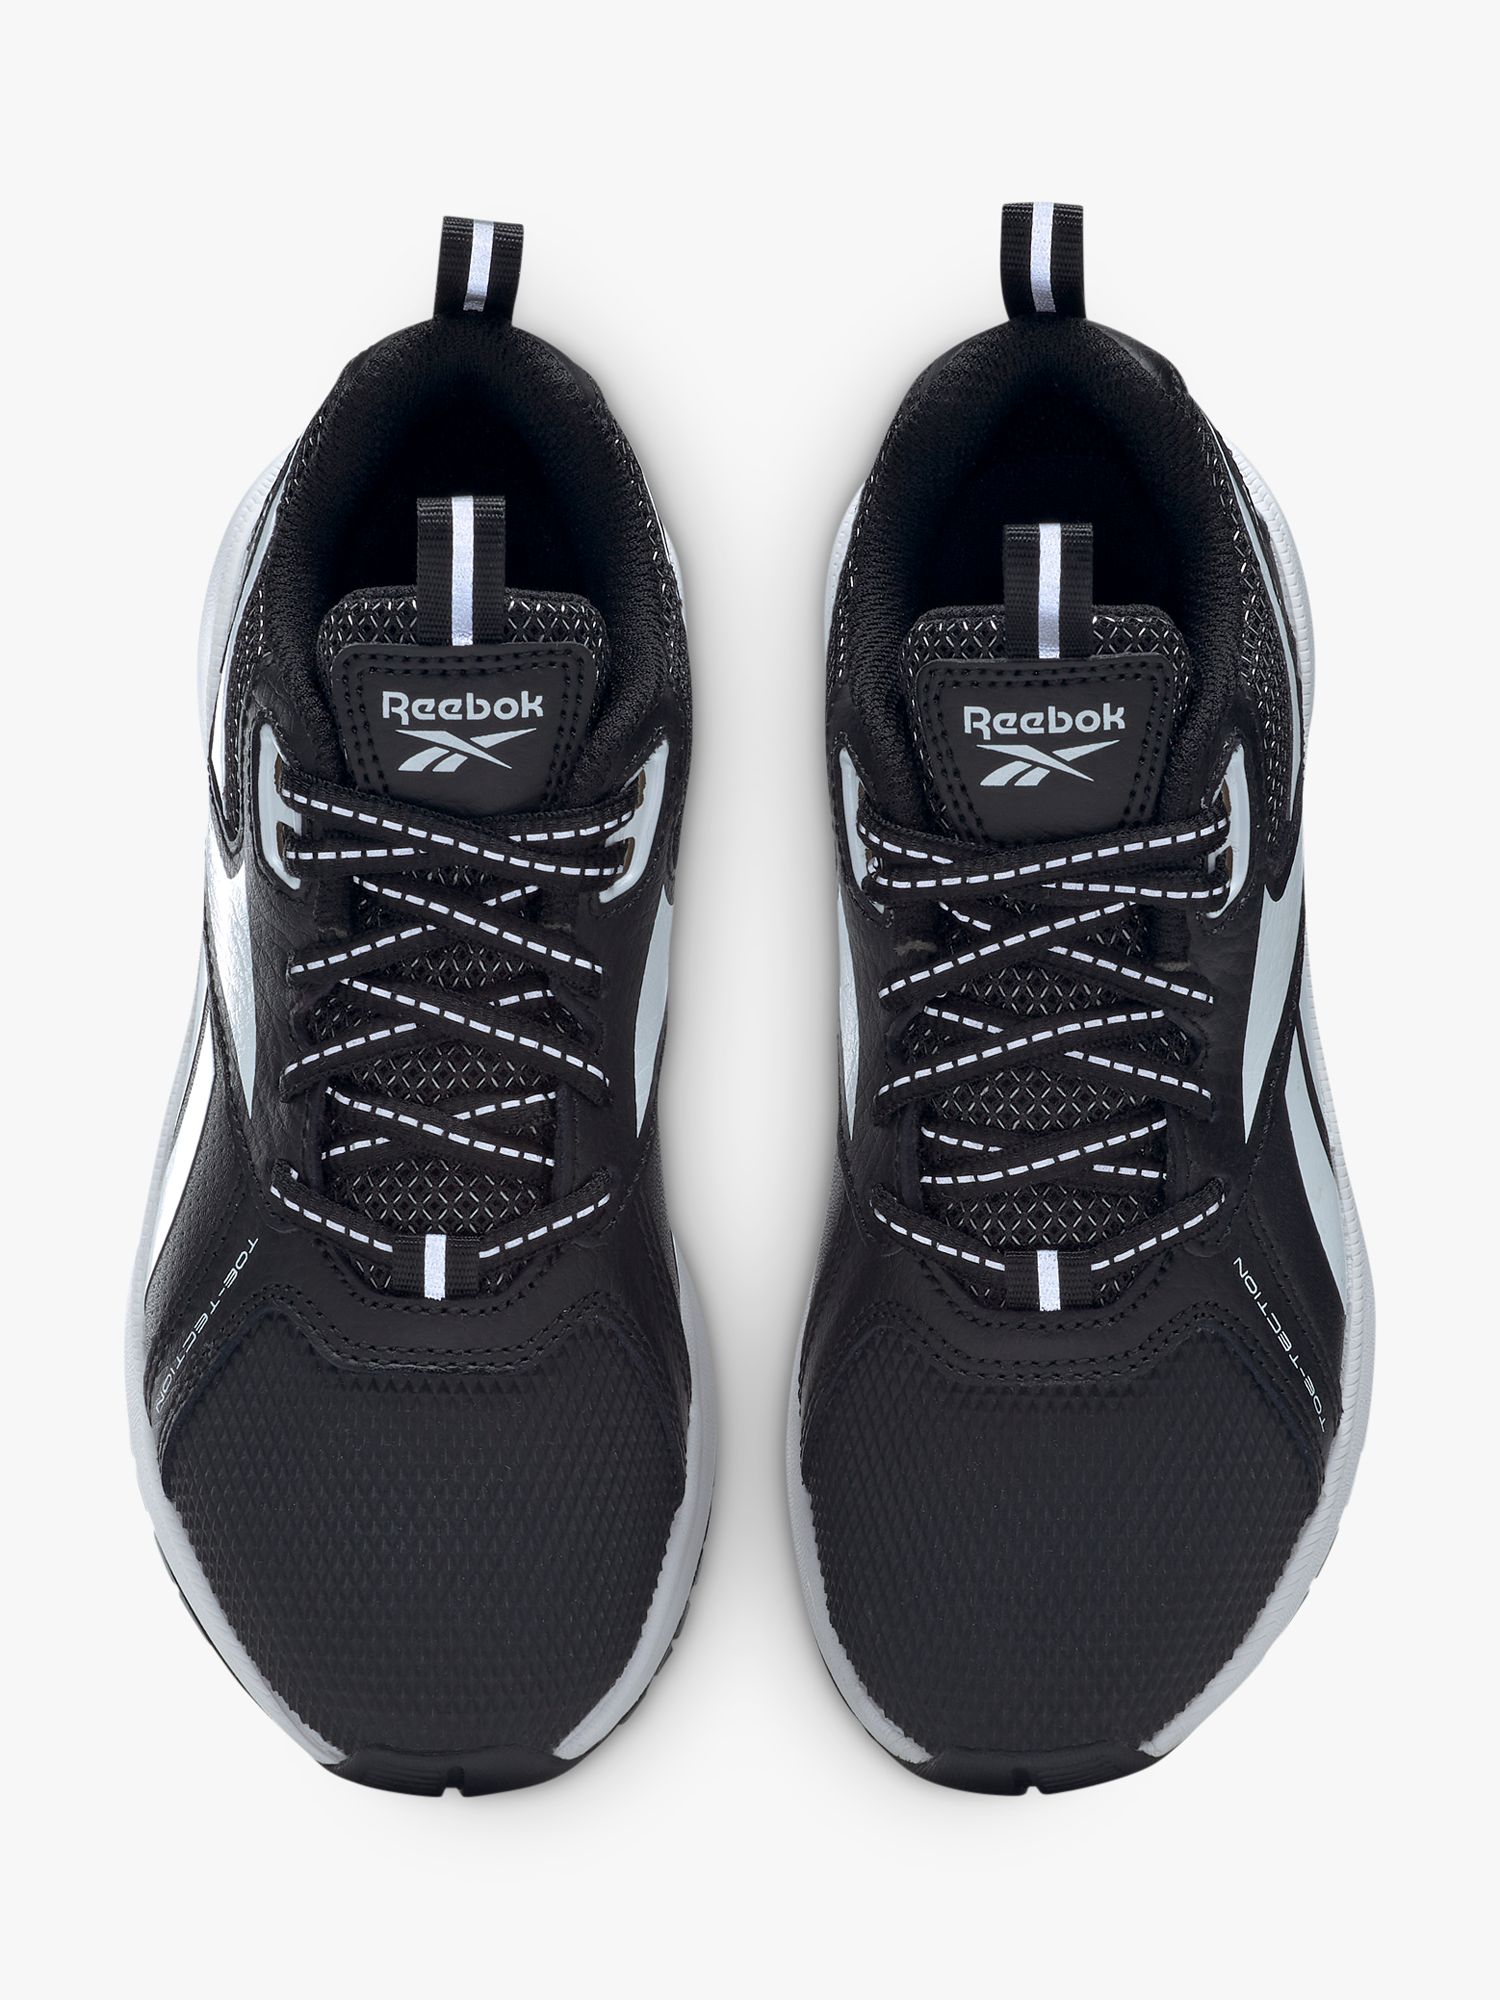 Reebok Durable XT Alt Shoes in Core Black / Core Black / Cloud White